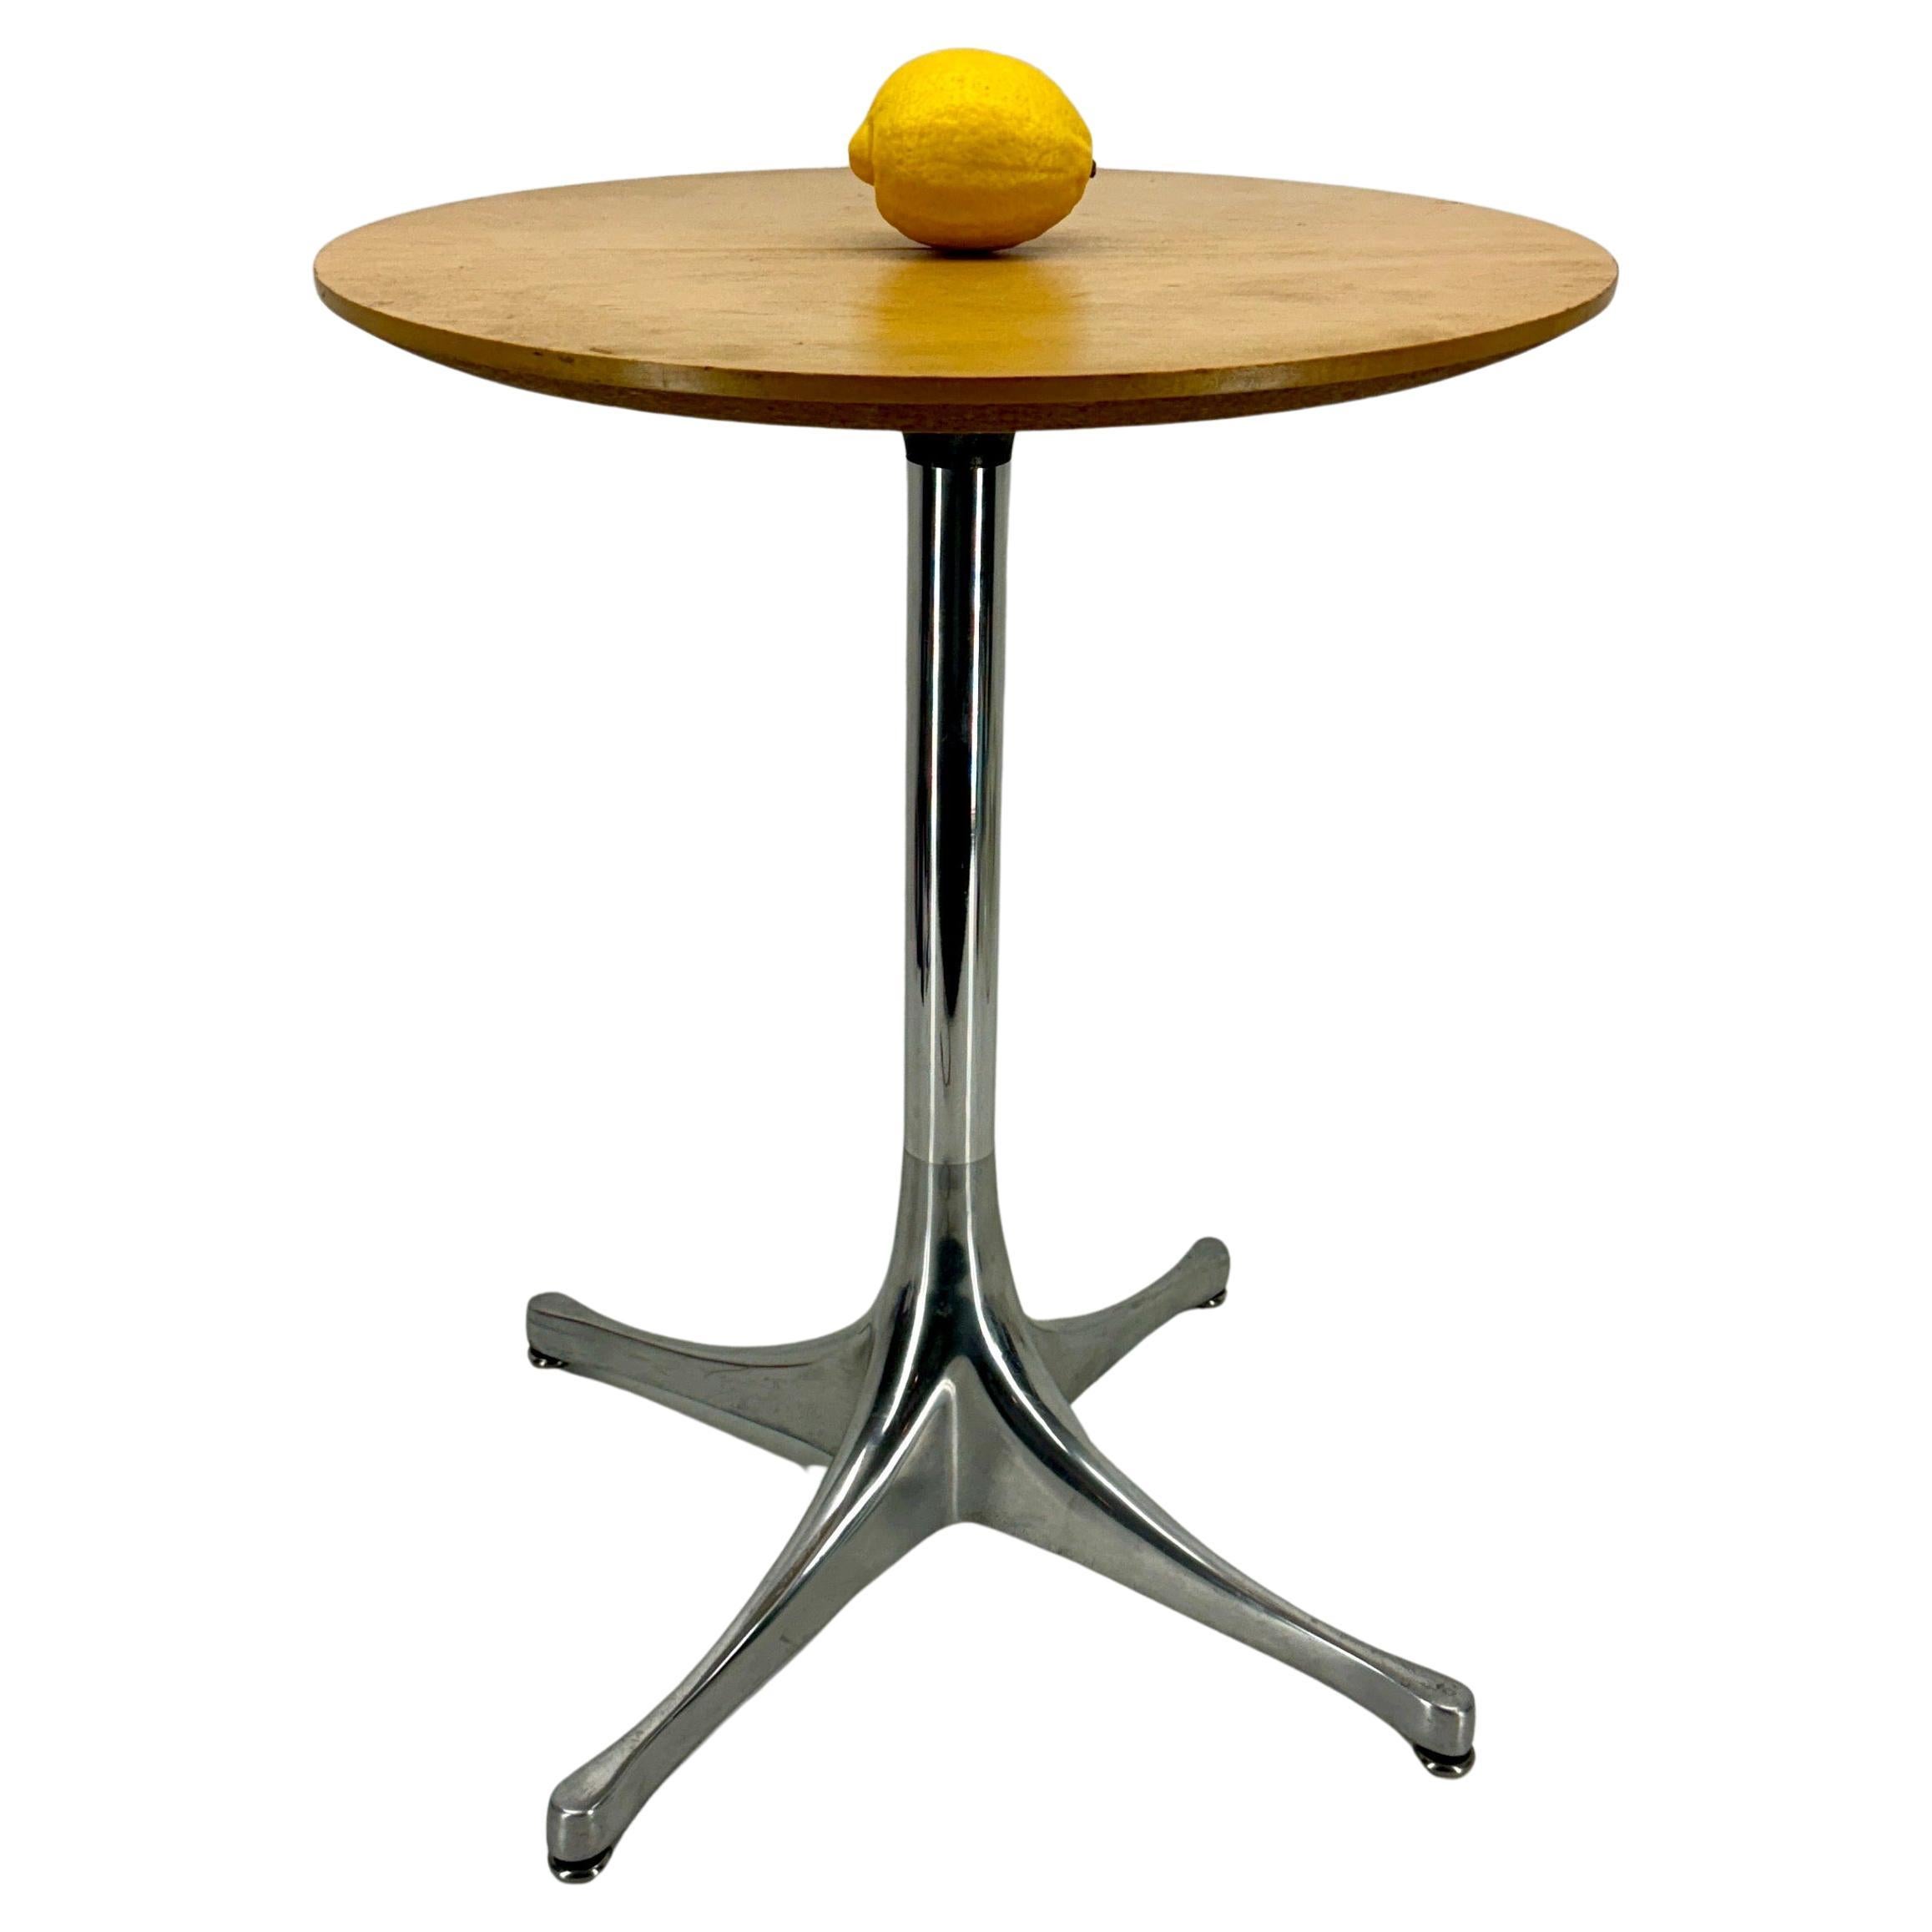 Nelson Pedestal Light Ash Metal End Side Table, Herman Miller

Le Nelson Pedestal Side Table (1954) reprend les caractéristiques de son concepteur, à savoir la simplicité, les lignes épurées et les formes qui mettent en valeur la beauté des